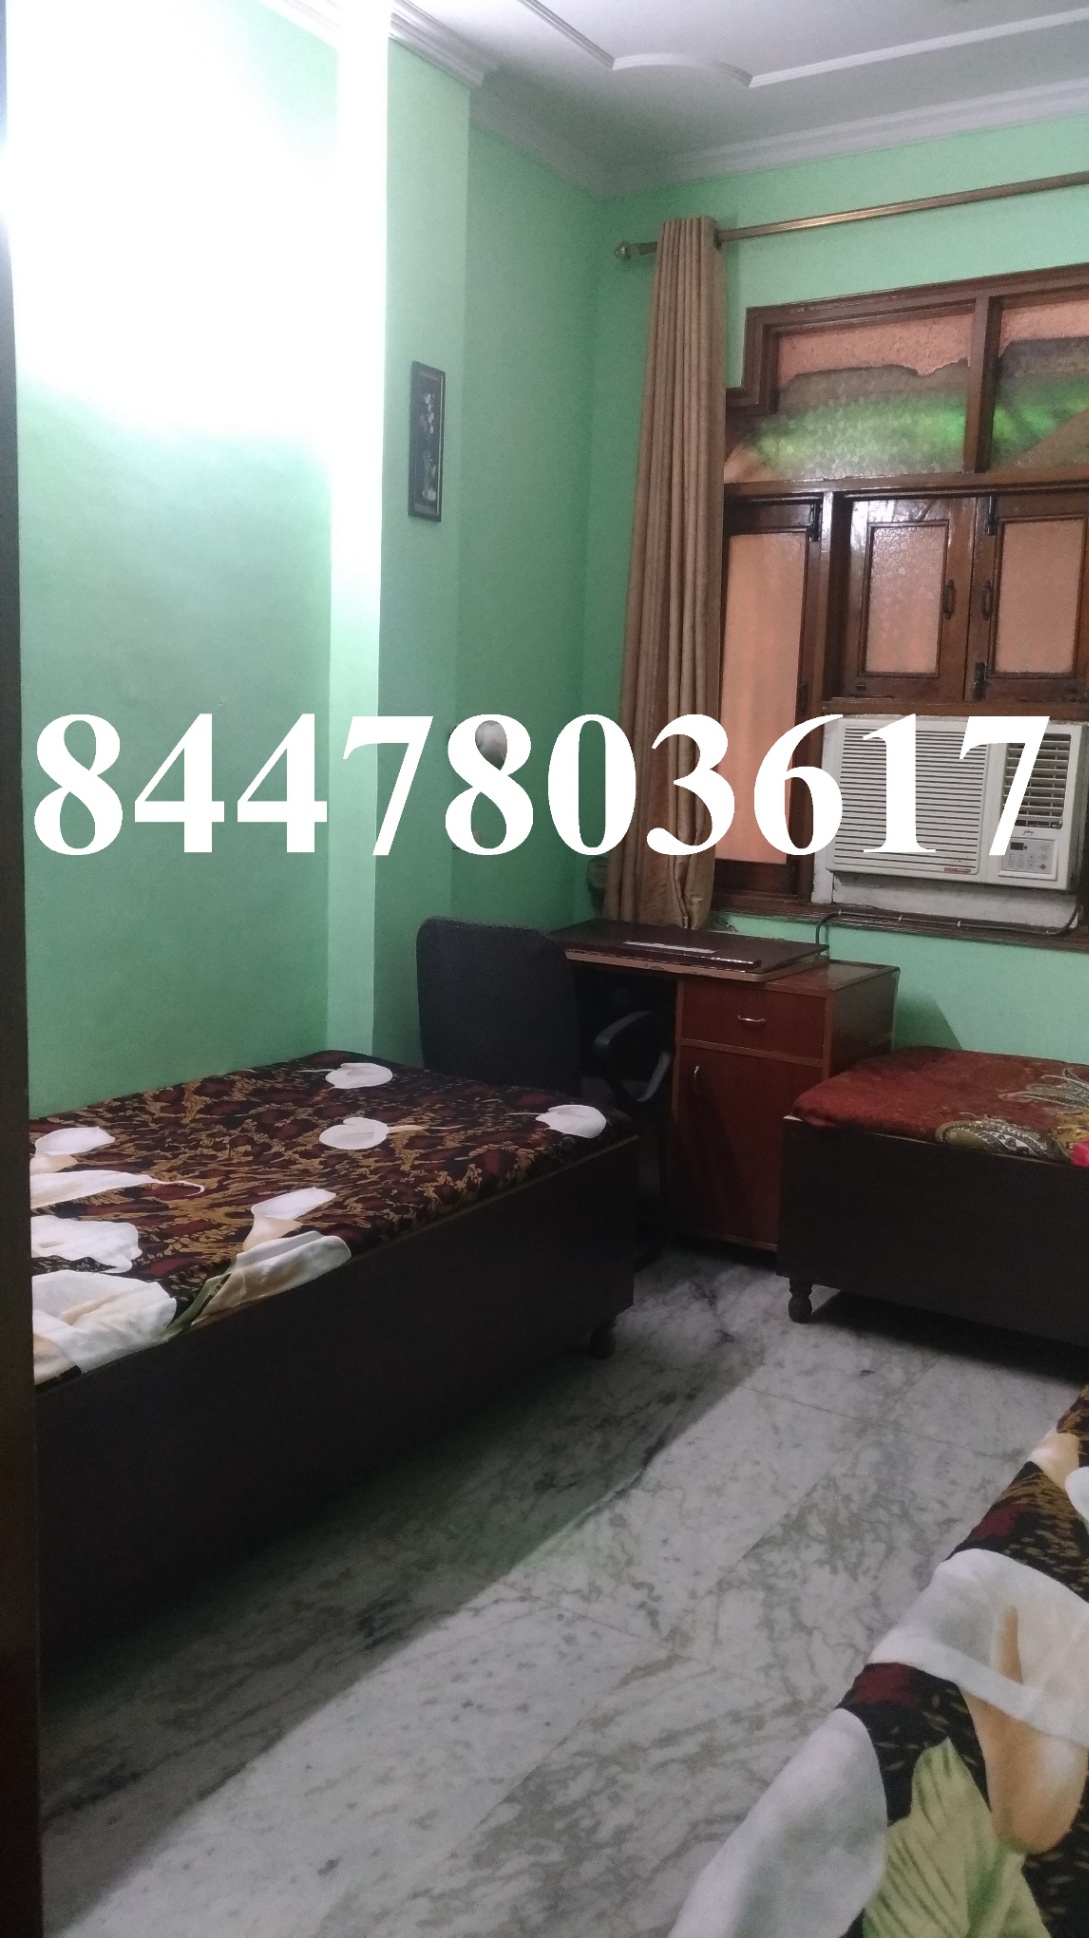 2 Bed/ 2 Bath Rent Apartment/ Flat; 1,000 sq. ft. carpet area, Furnished for rent @dev nagar